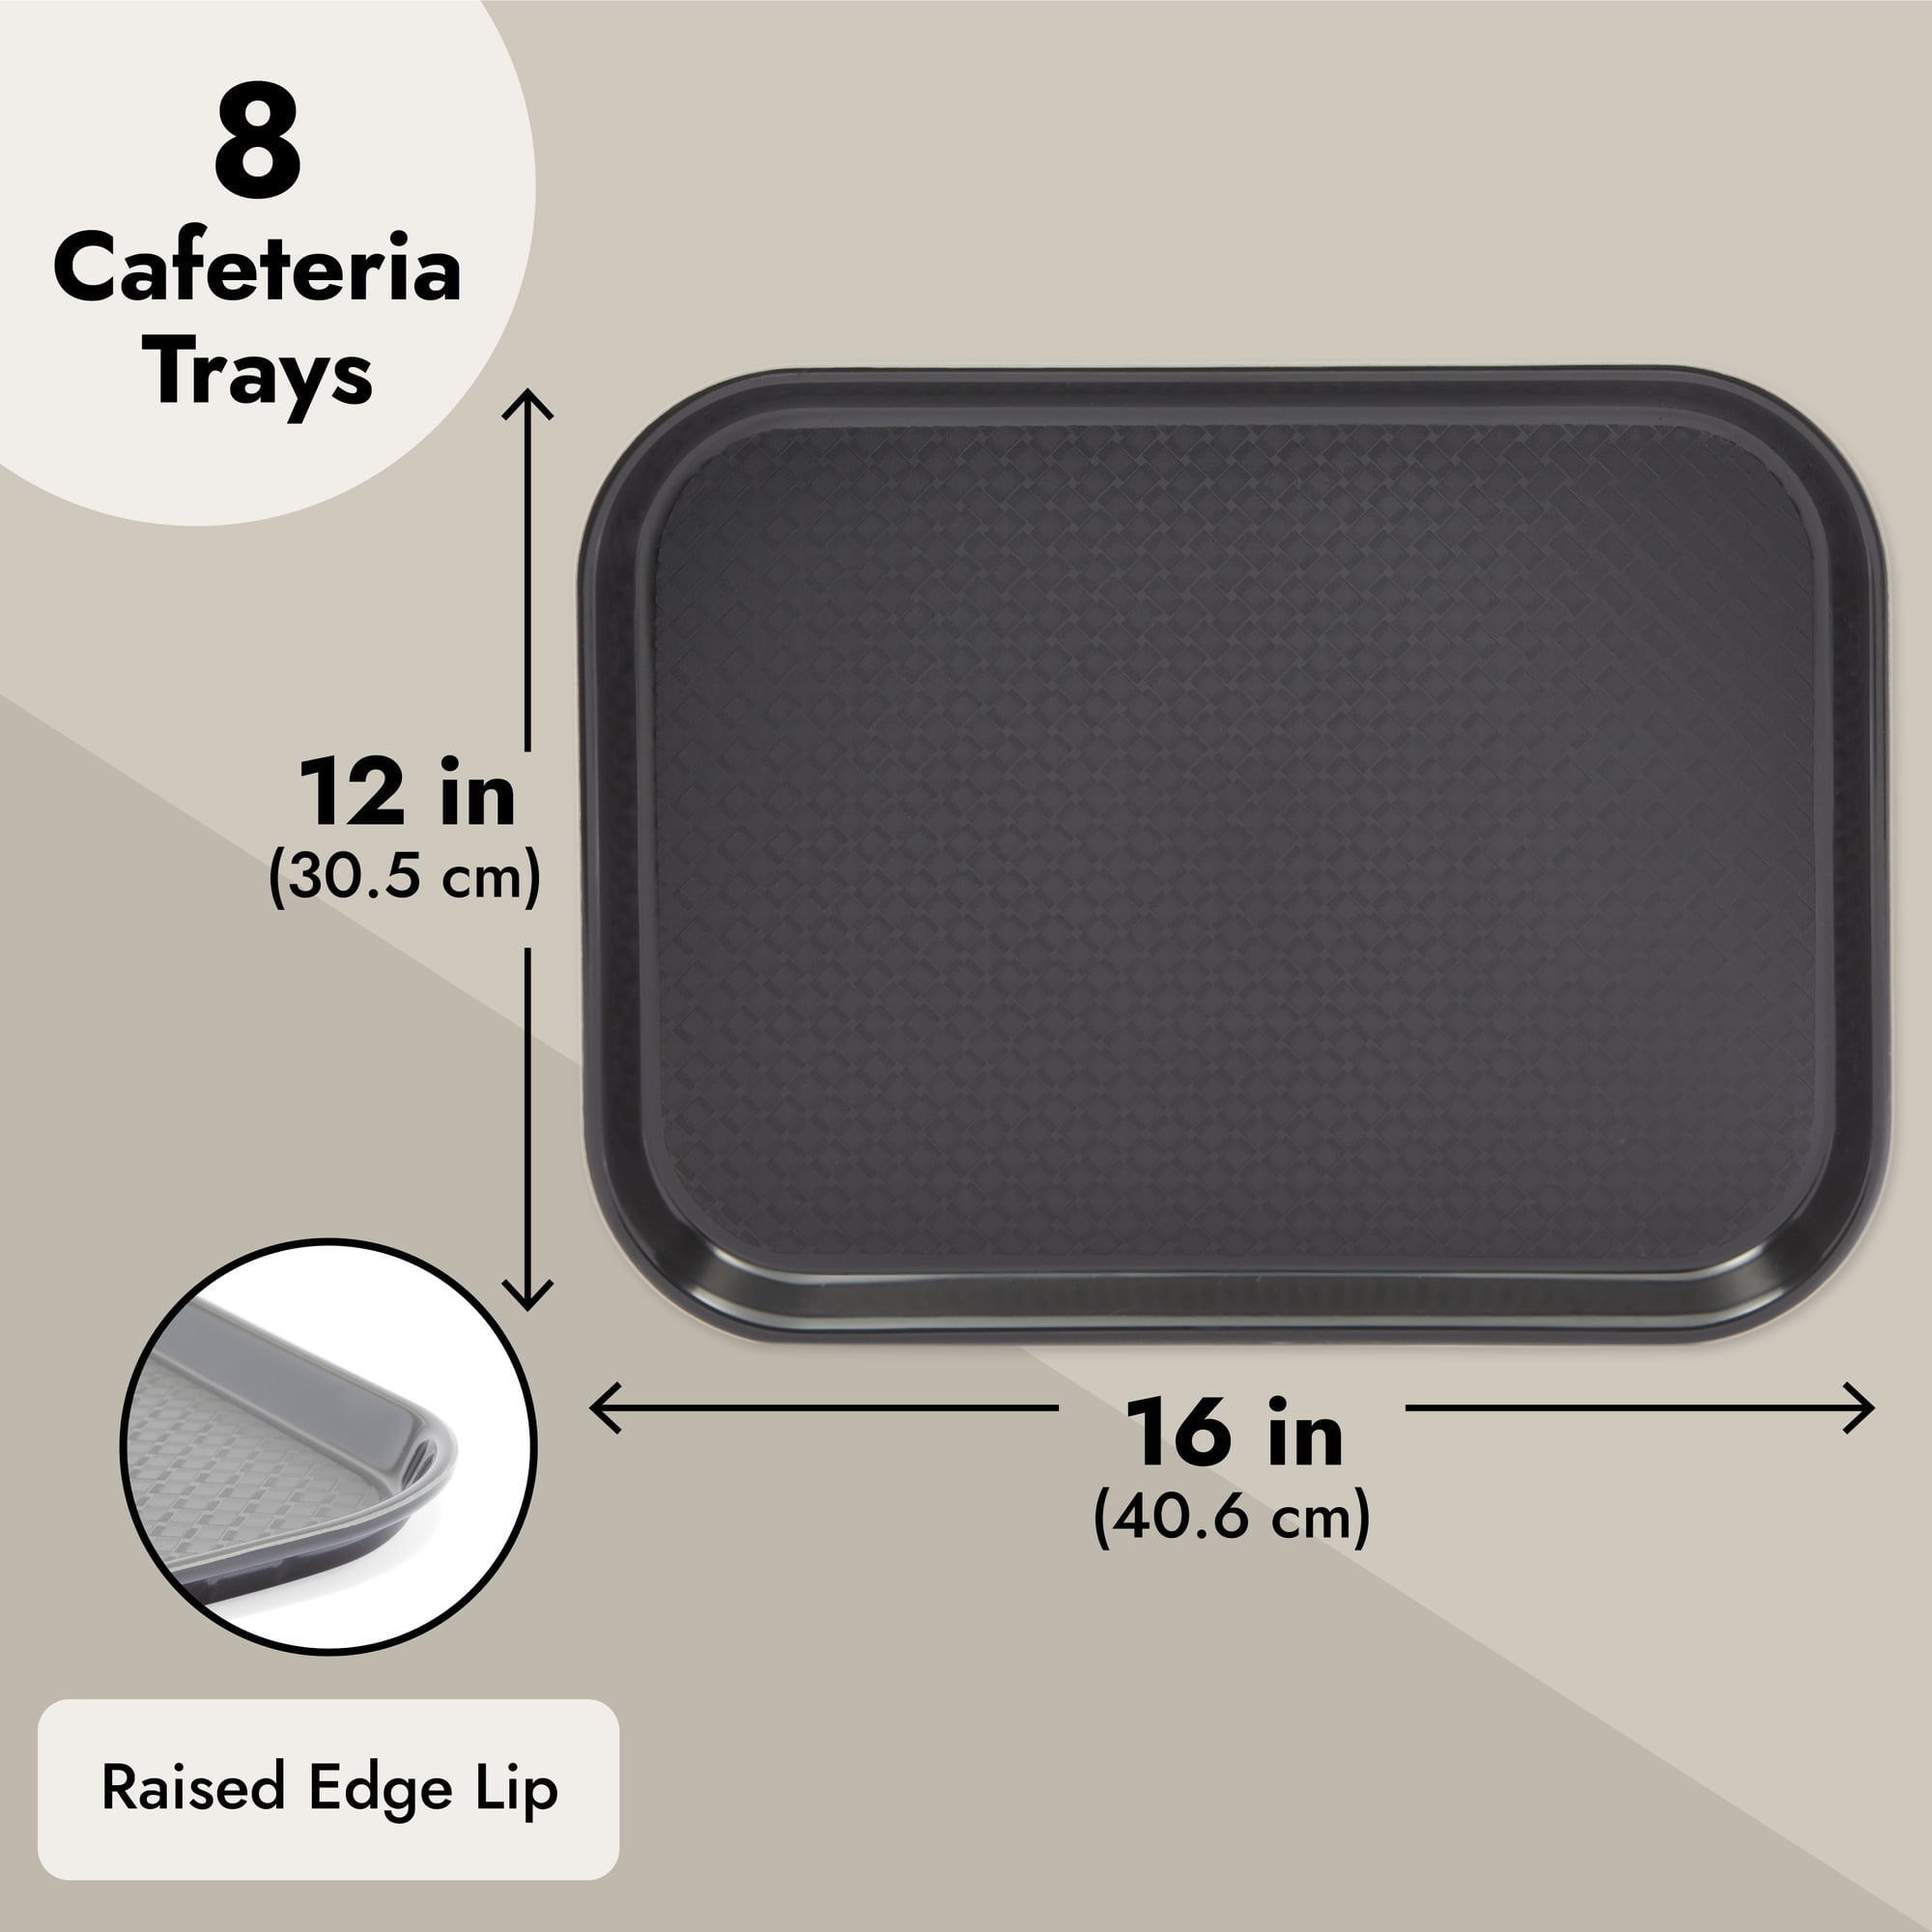 Cafeteria Tray 15 x 20, Black (12 per case) - L45